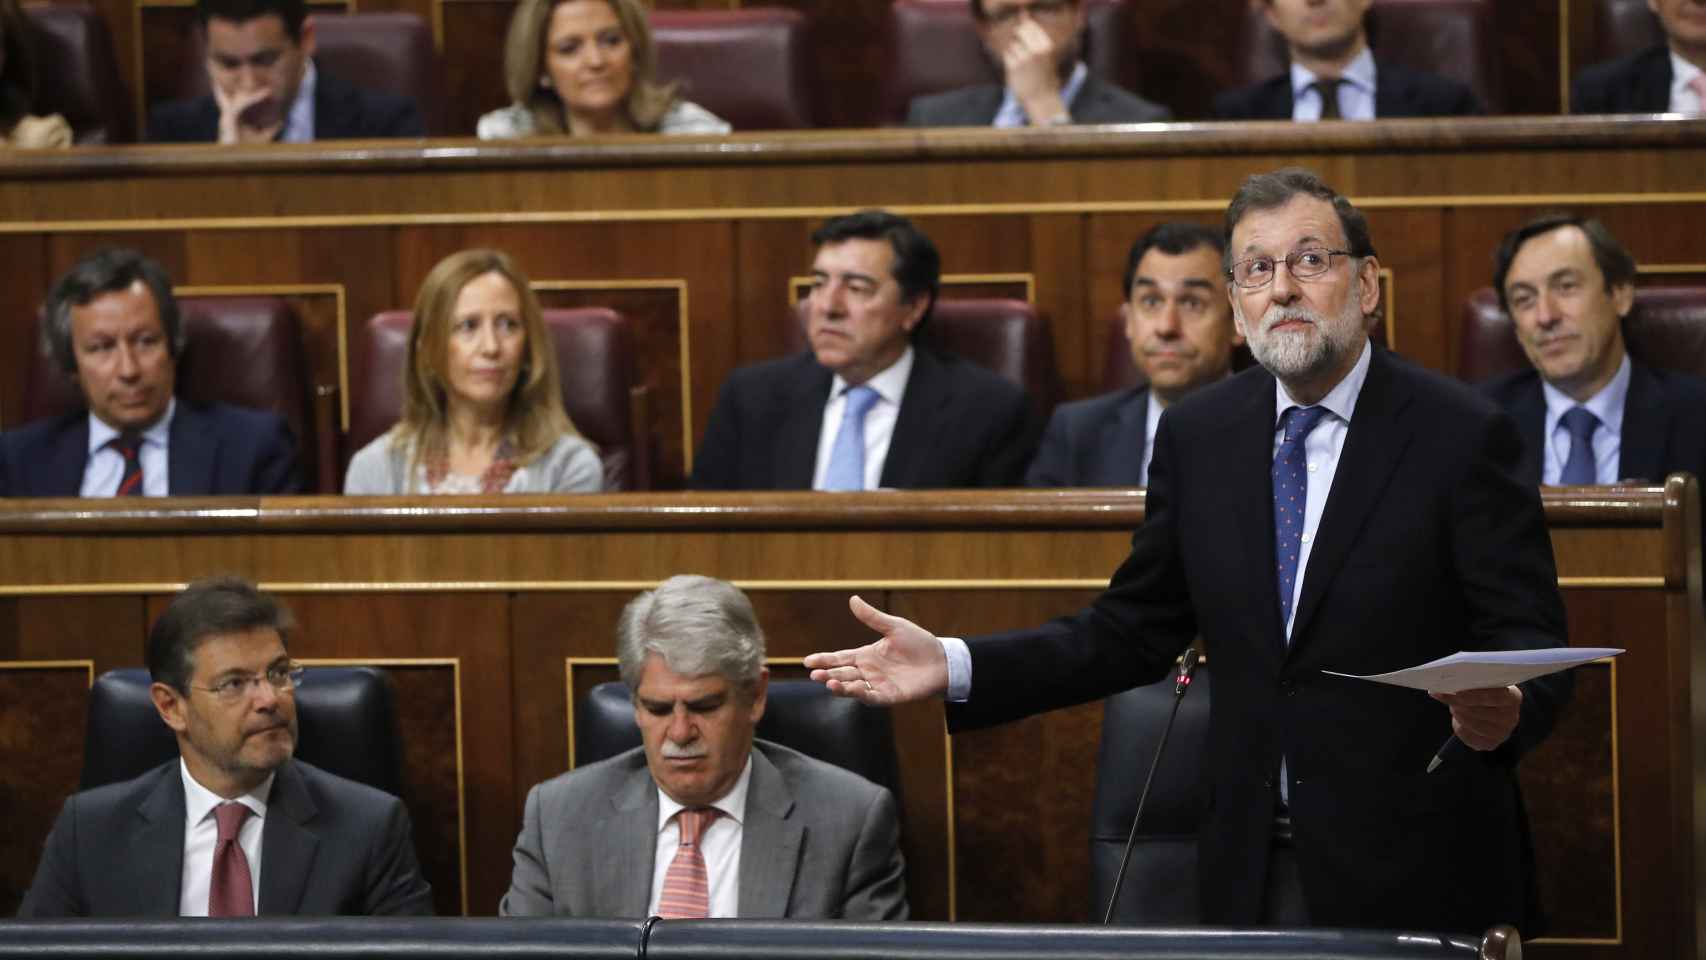 El presidente del Gobierno, Mariano Rajoy, durante una intervención en el Congreso.